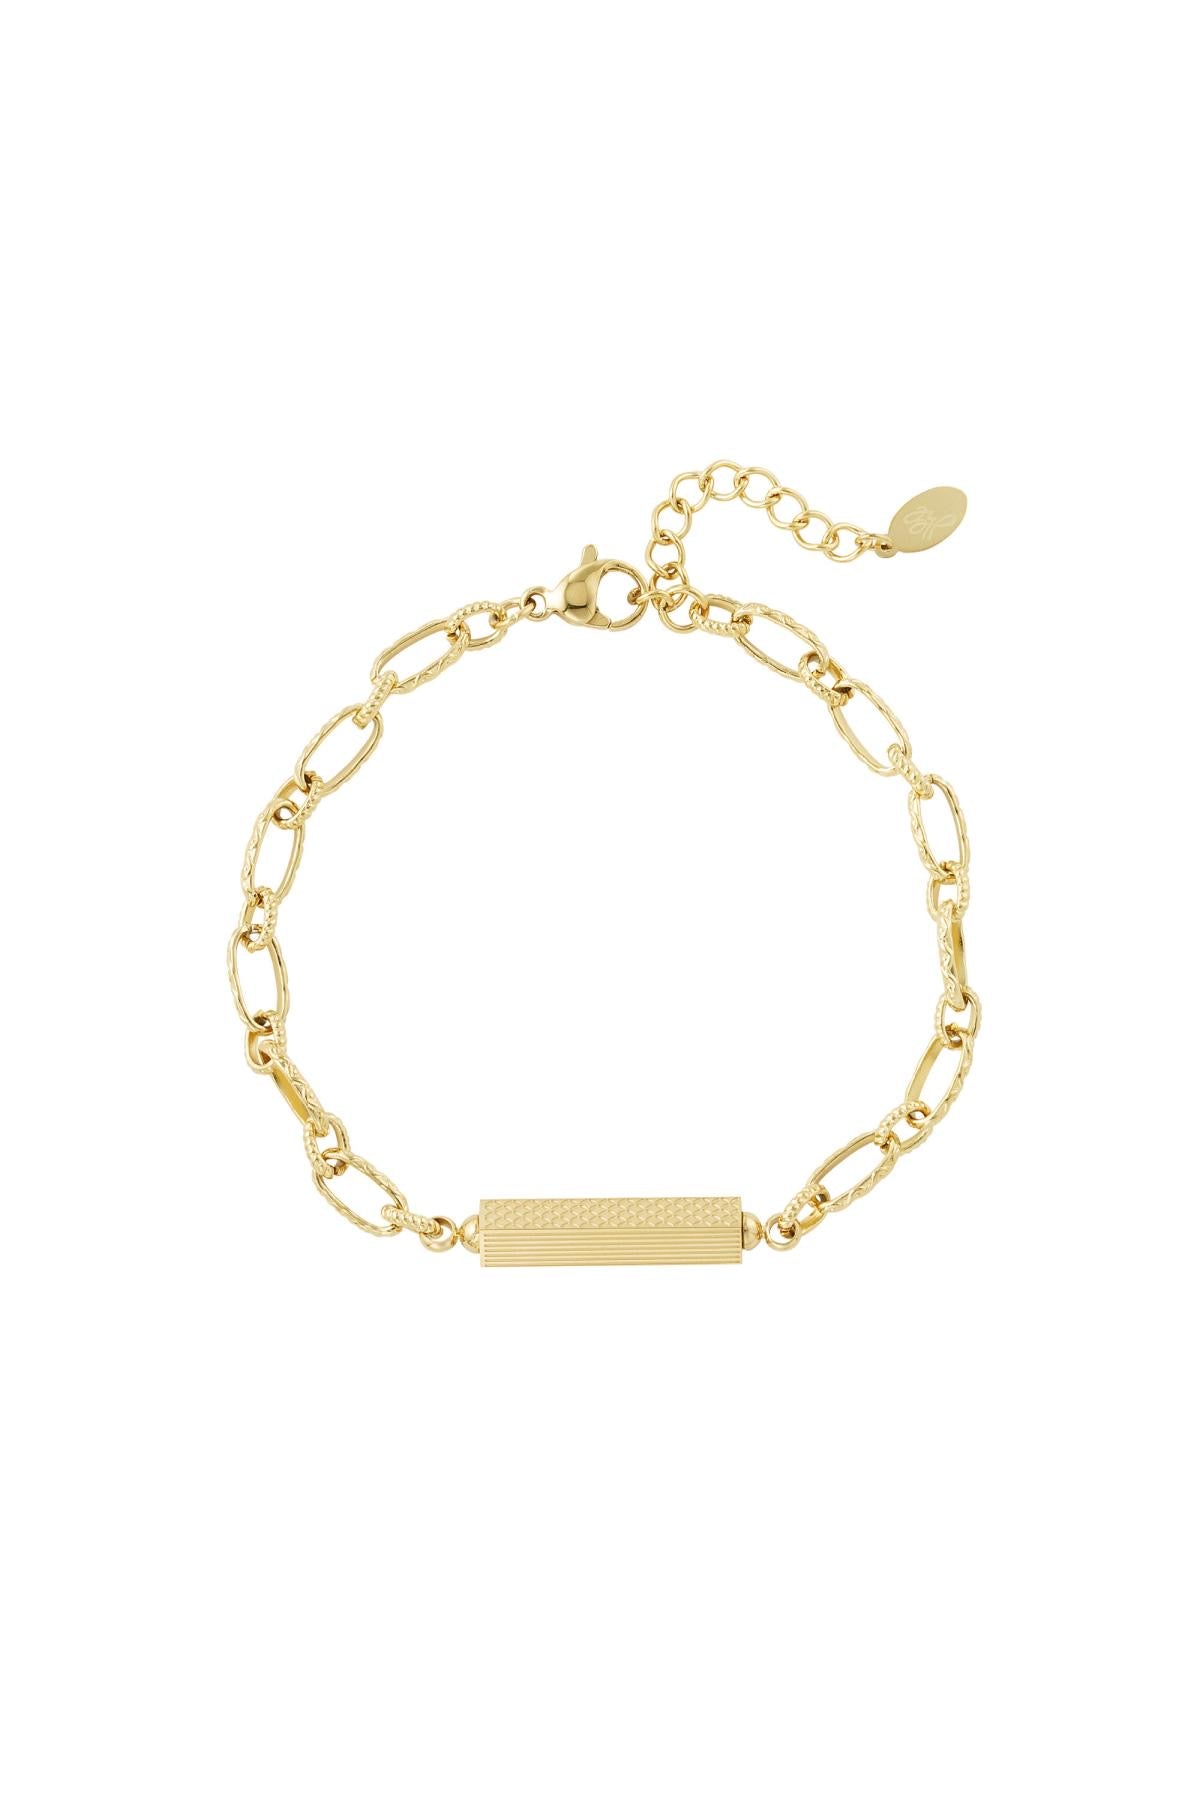 Gold Bar Link Chain Bracelet